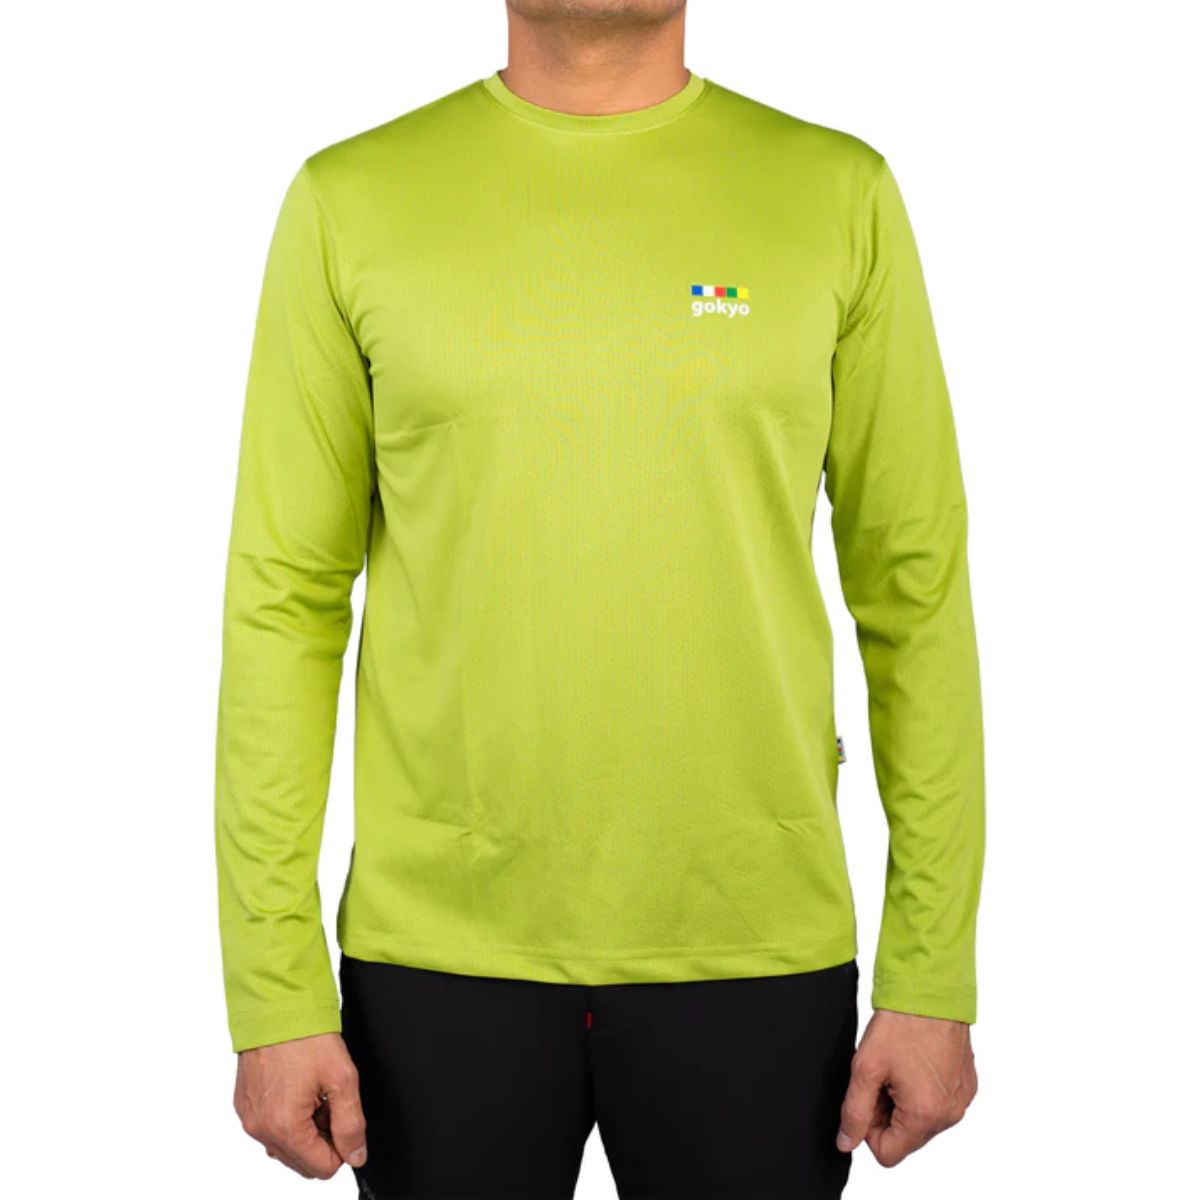 Trekking T-Shirt - Explorer Series - Light Green 1